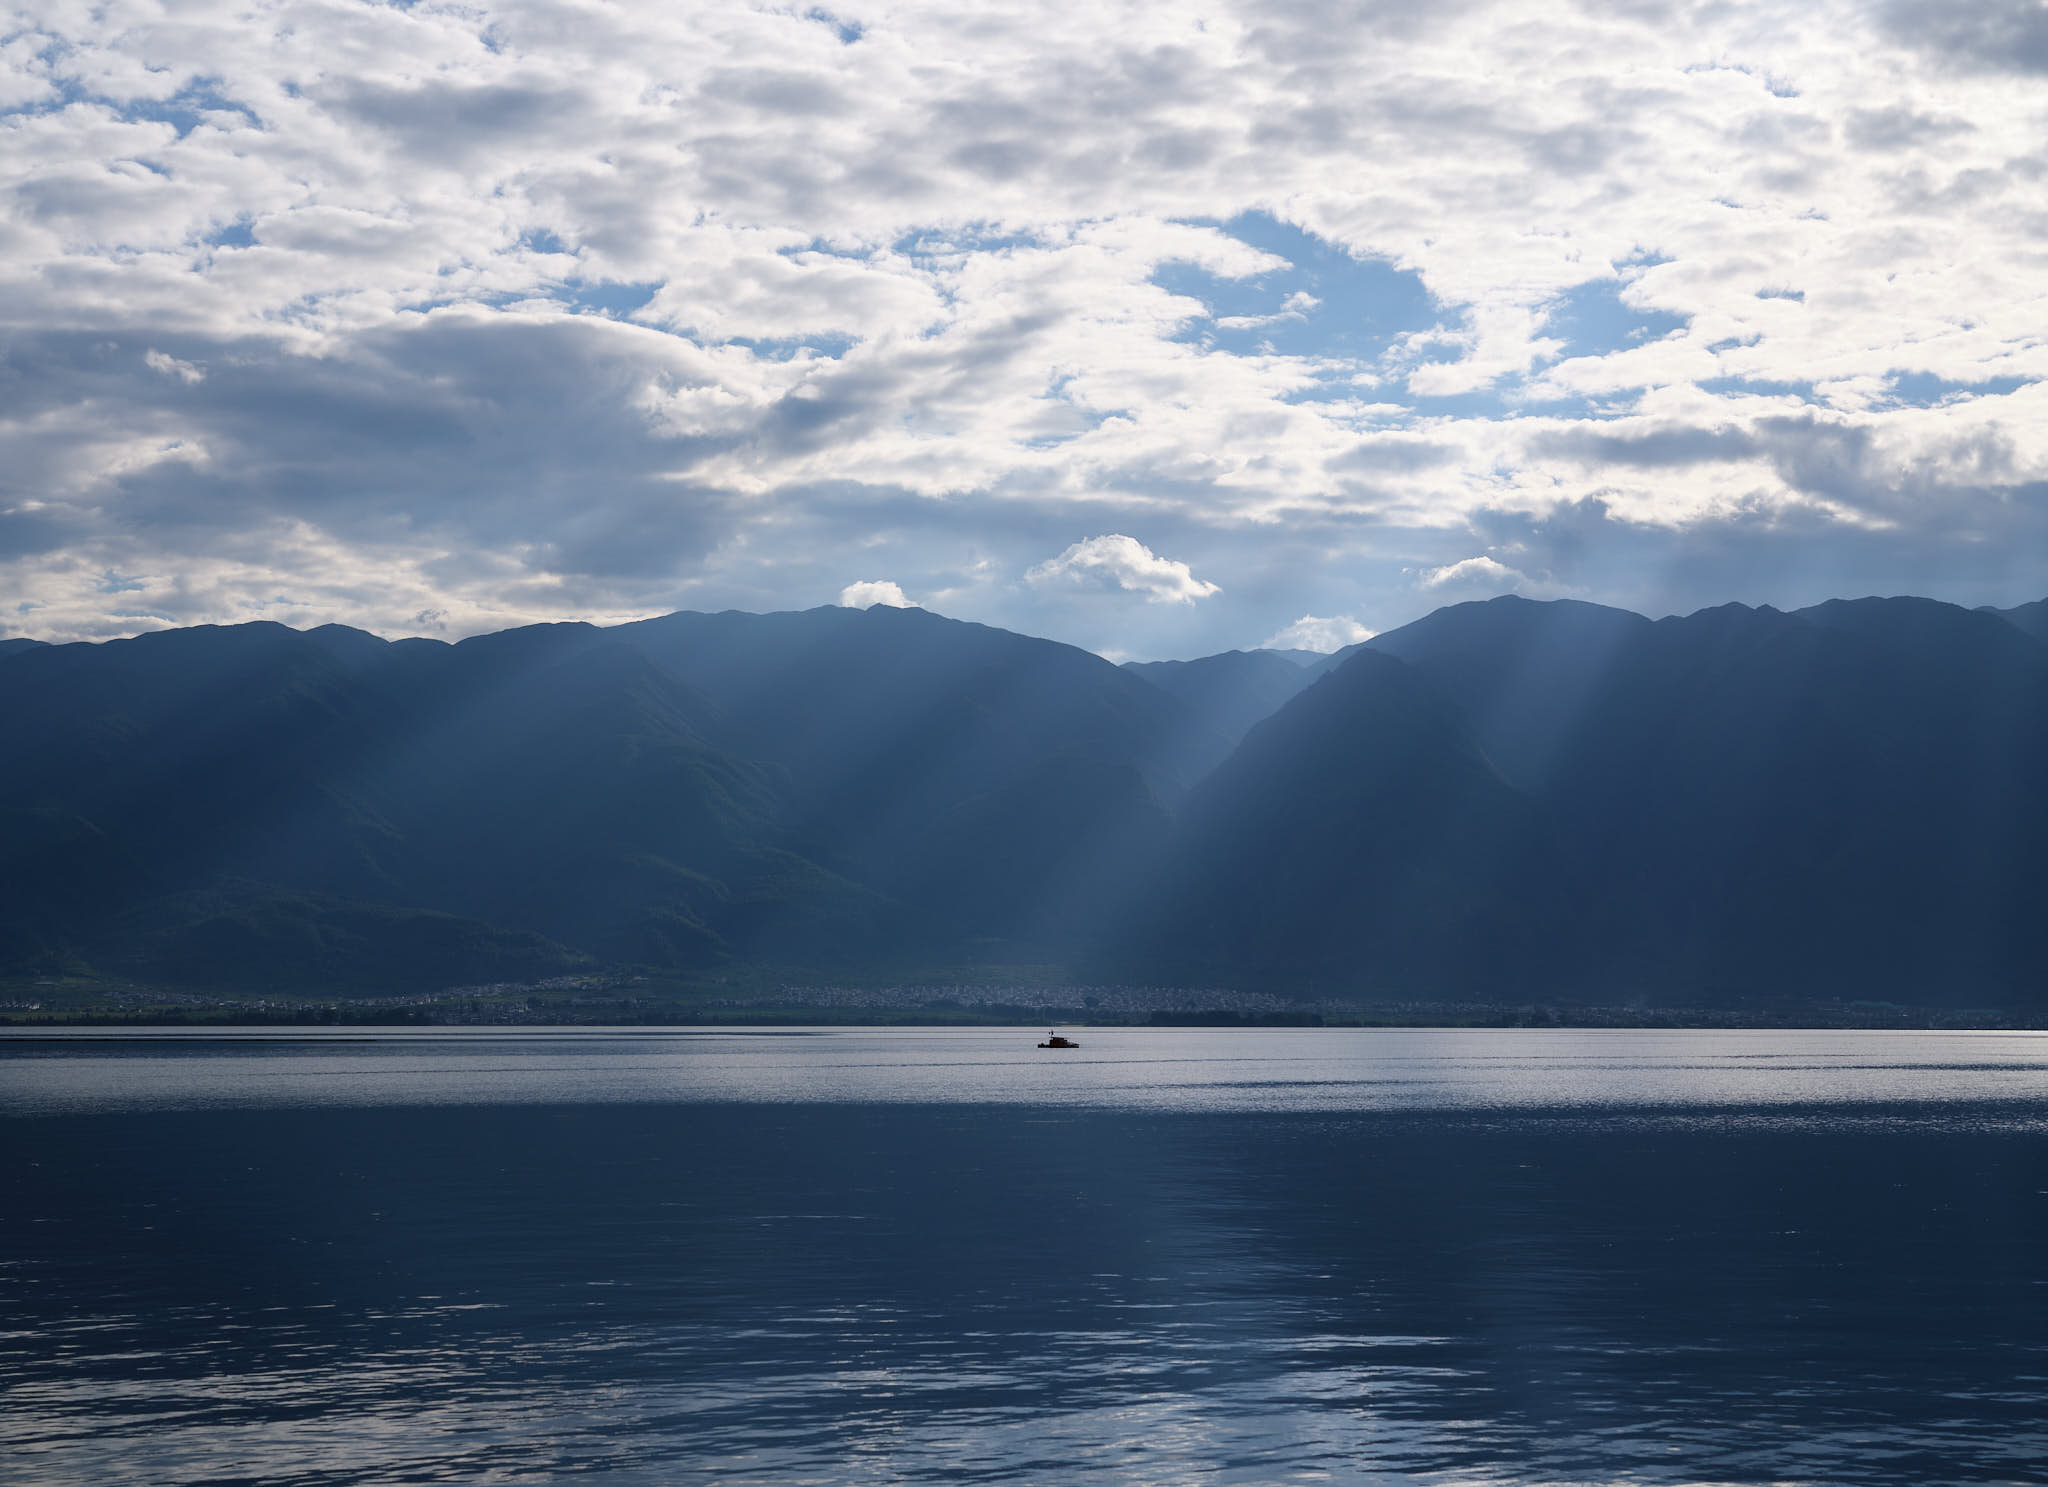 God rays shining down on Erhai Lake